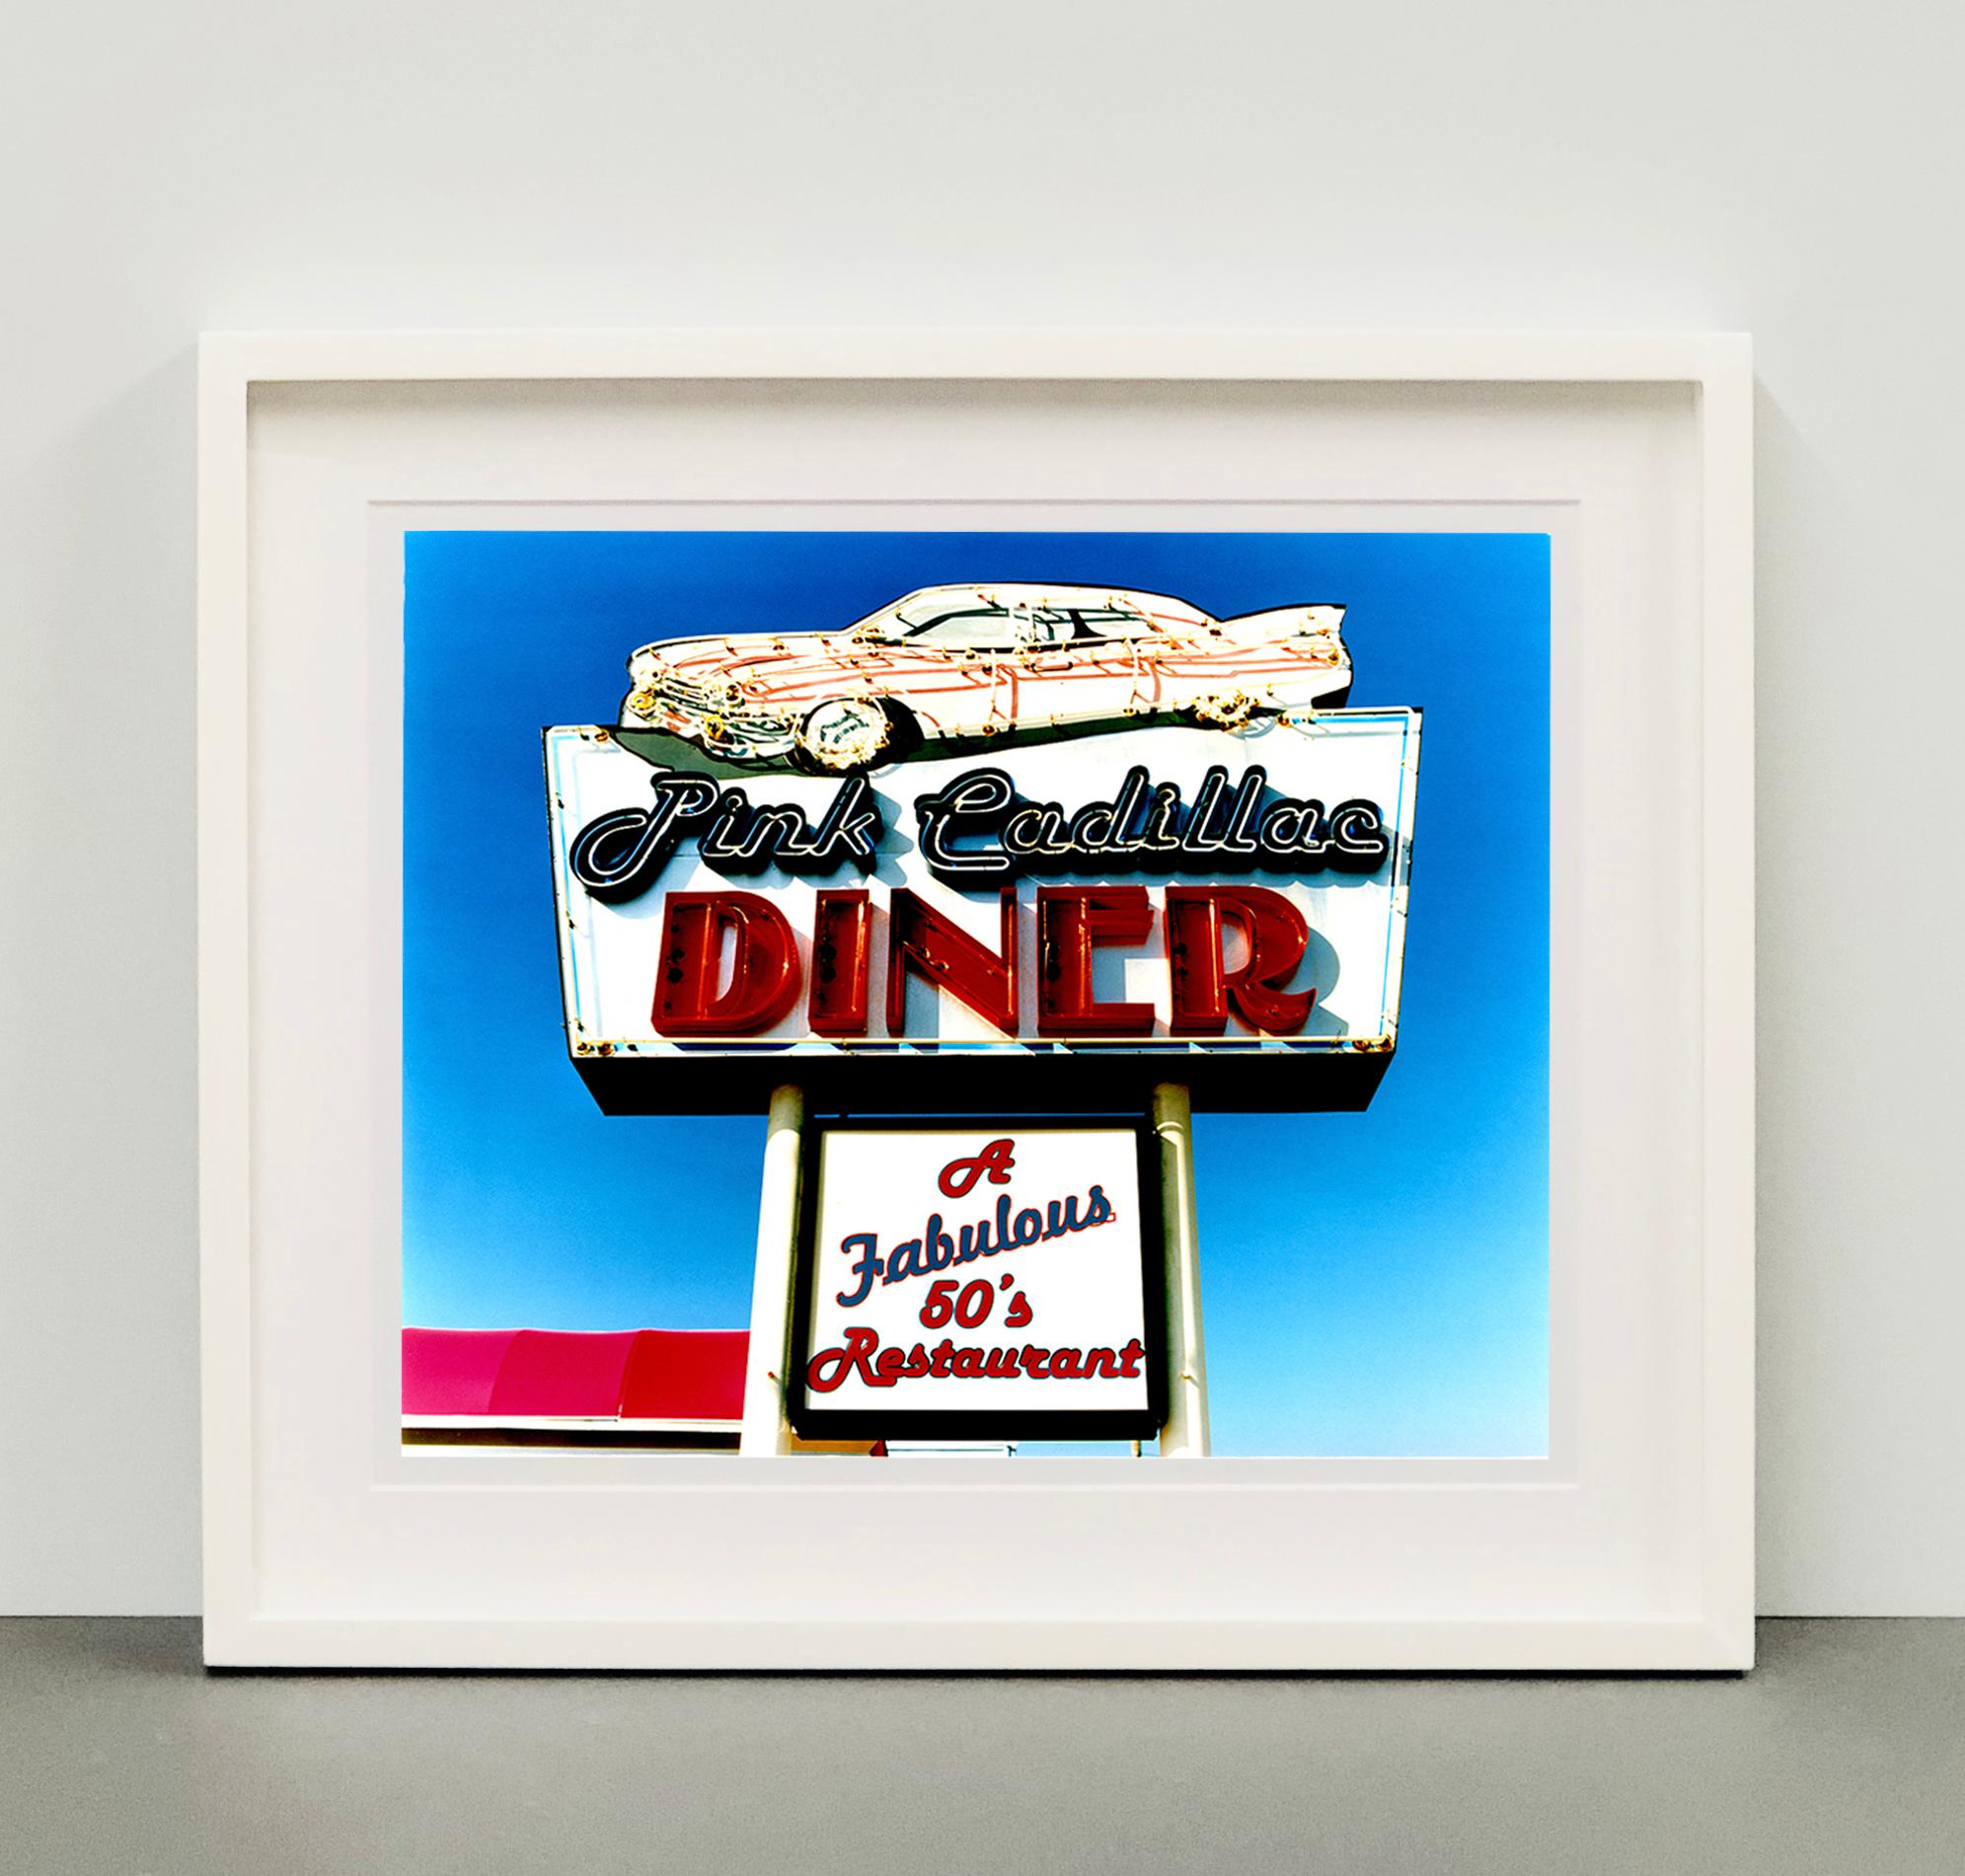 Kitschiger Pop-Art-Americana-Schilderporno von Richard Heeps, aufgenommen in der Doo-Wop-Stadt Wildwood, New Jersey.

Dieses Kunstwerk ist eine auf 25 Exemplare limitierte Auflage eines glänzenden Fotodrucks, der trocken auf Aluminium aufgezogen